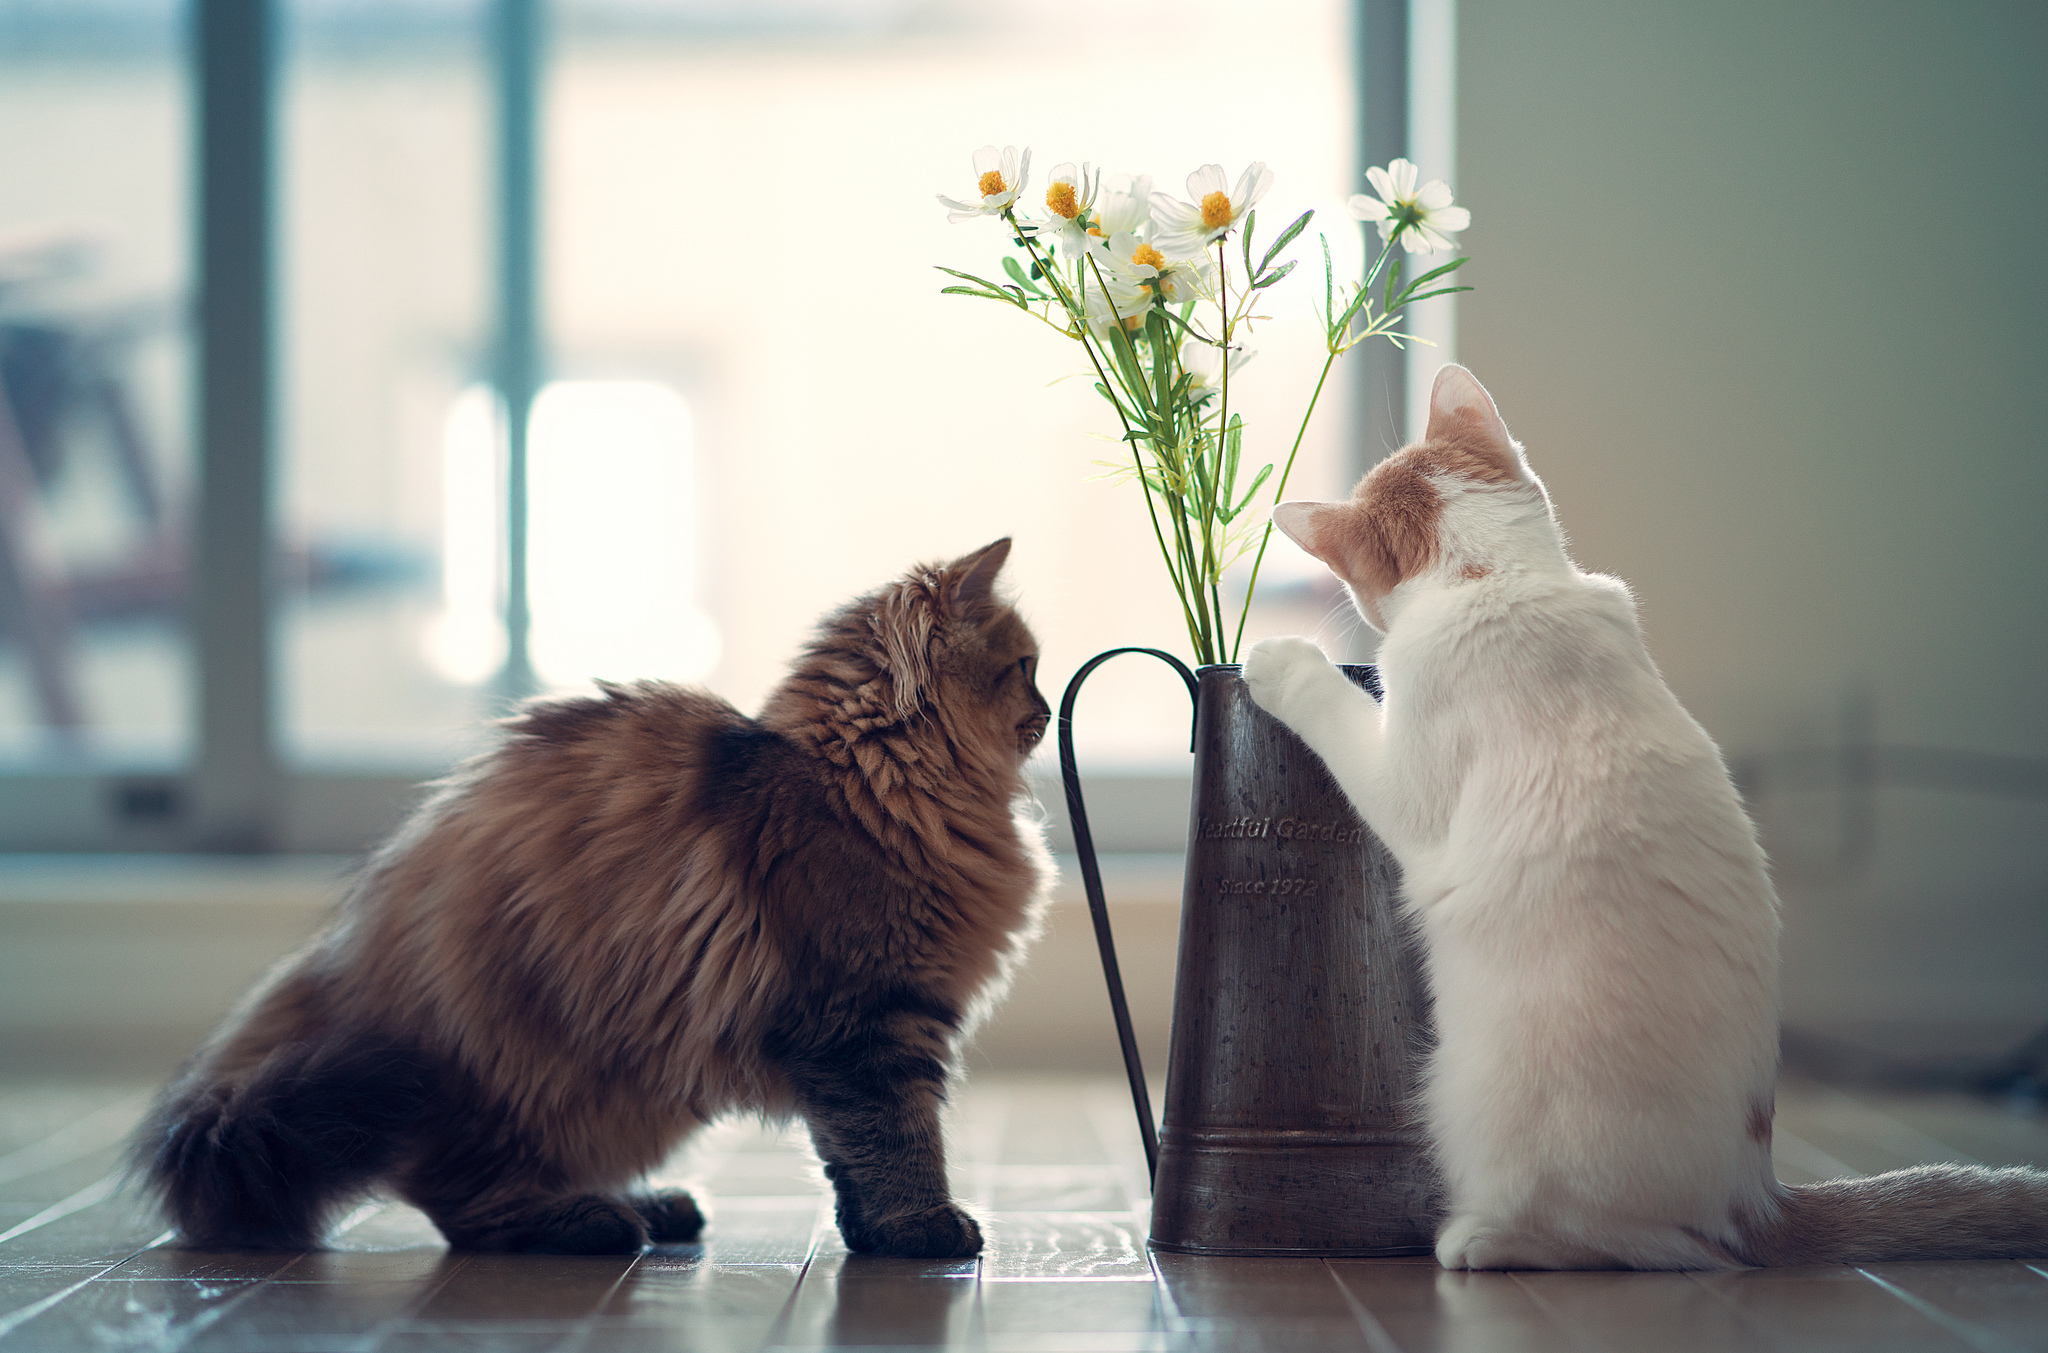 Картинка cat net. Забавные кошки. Котики и цветы.